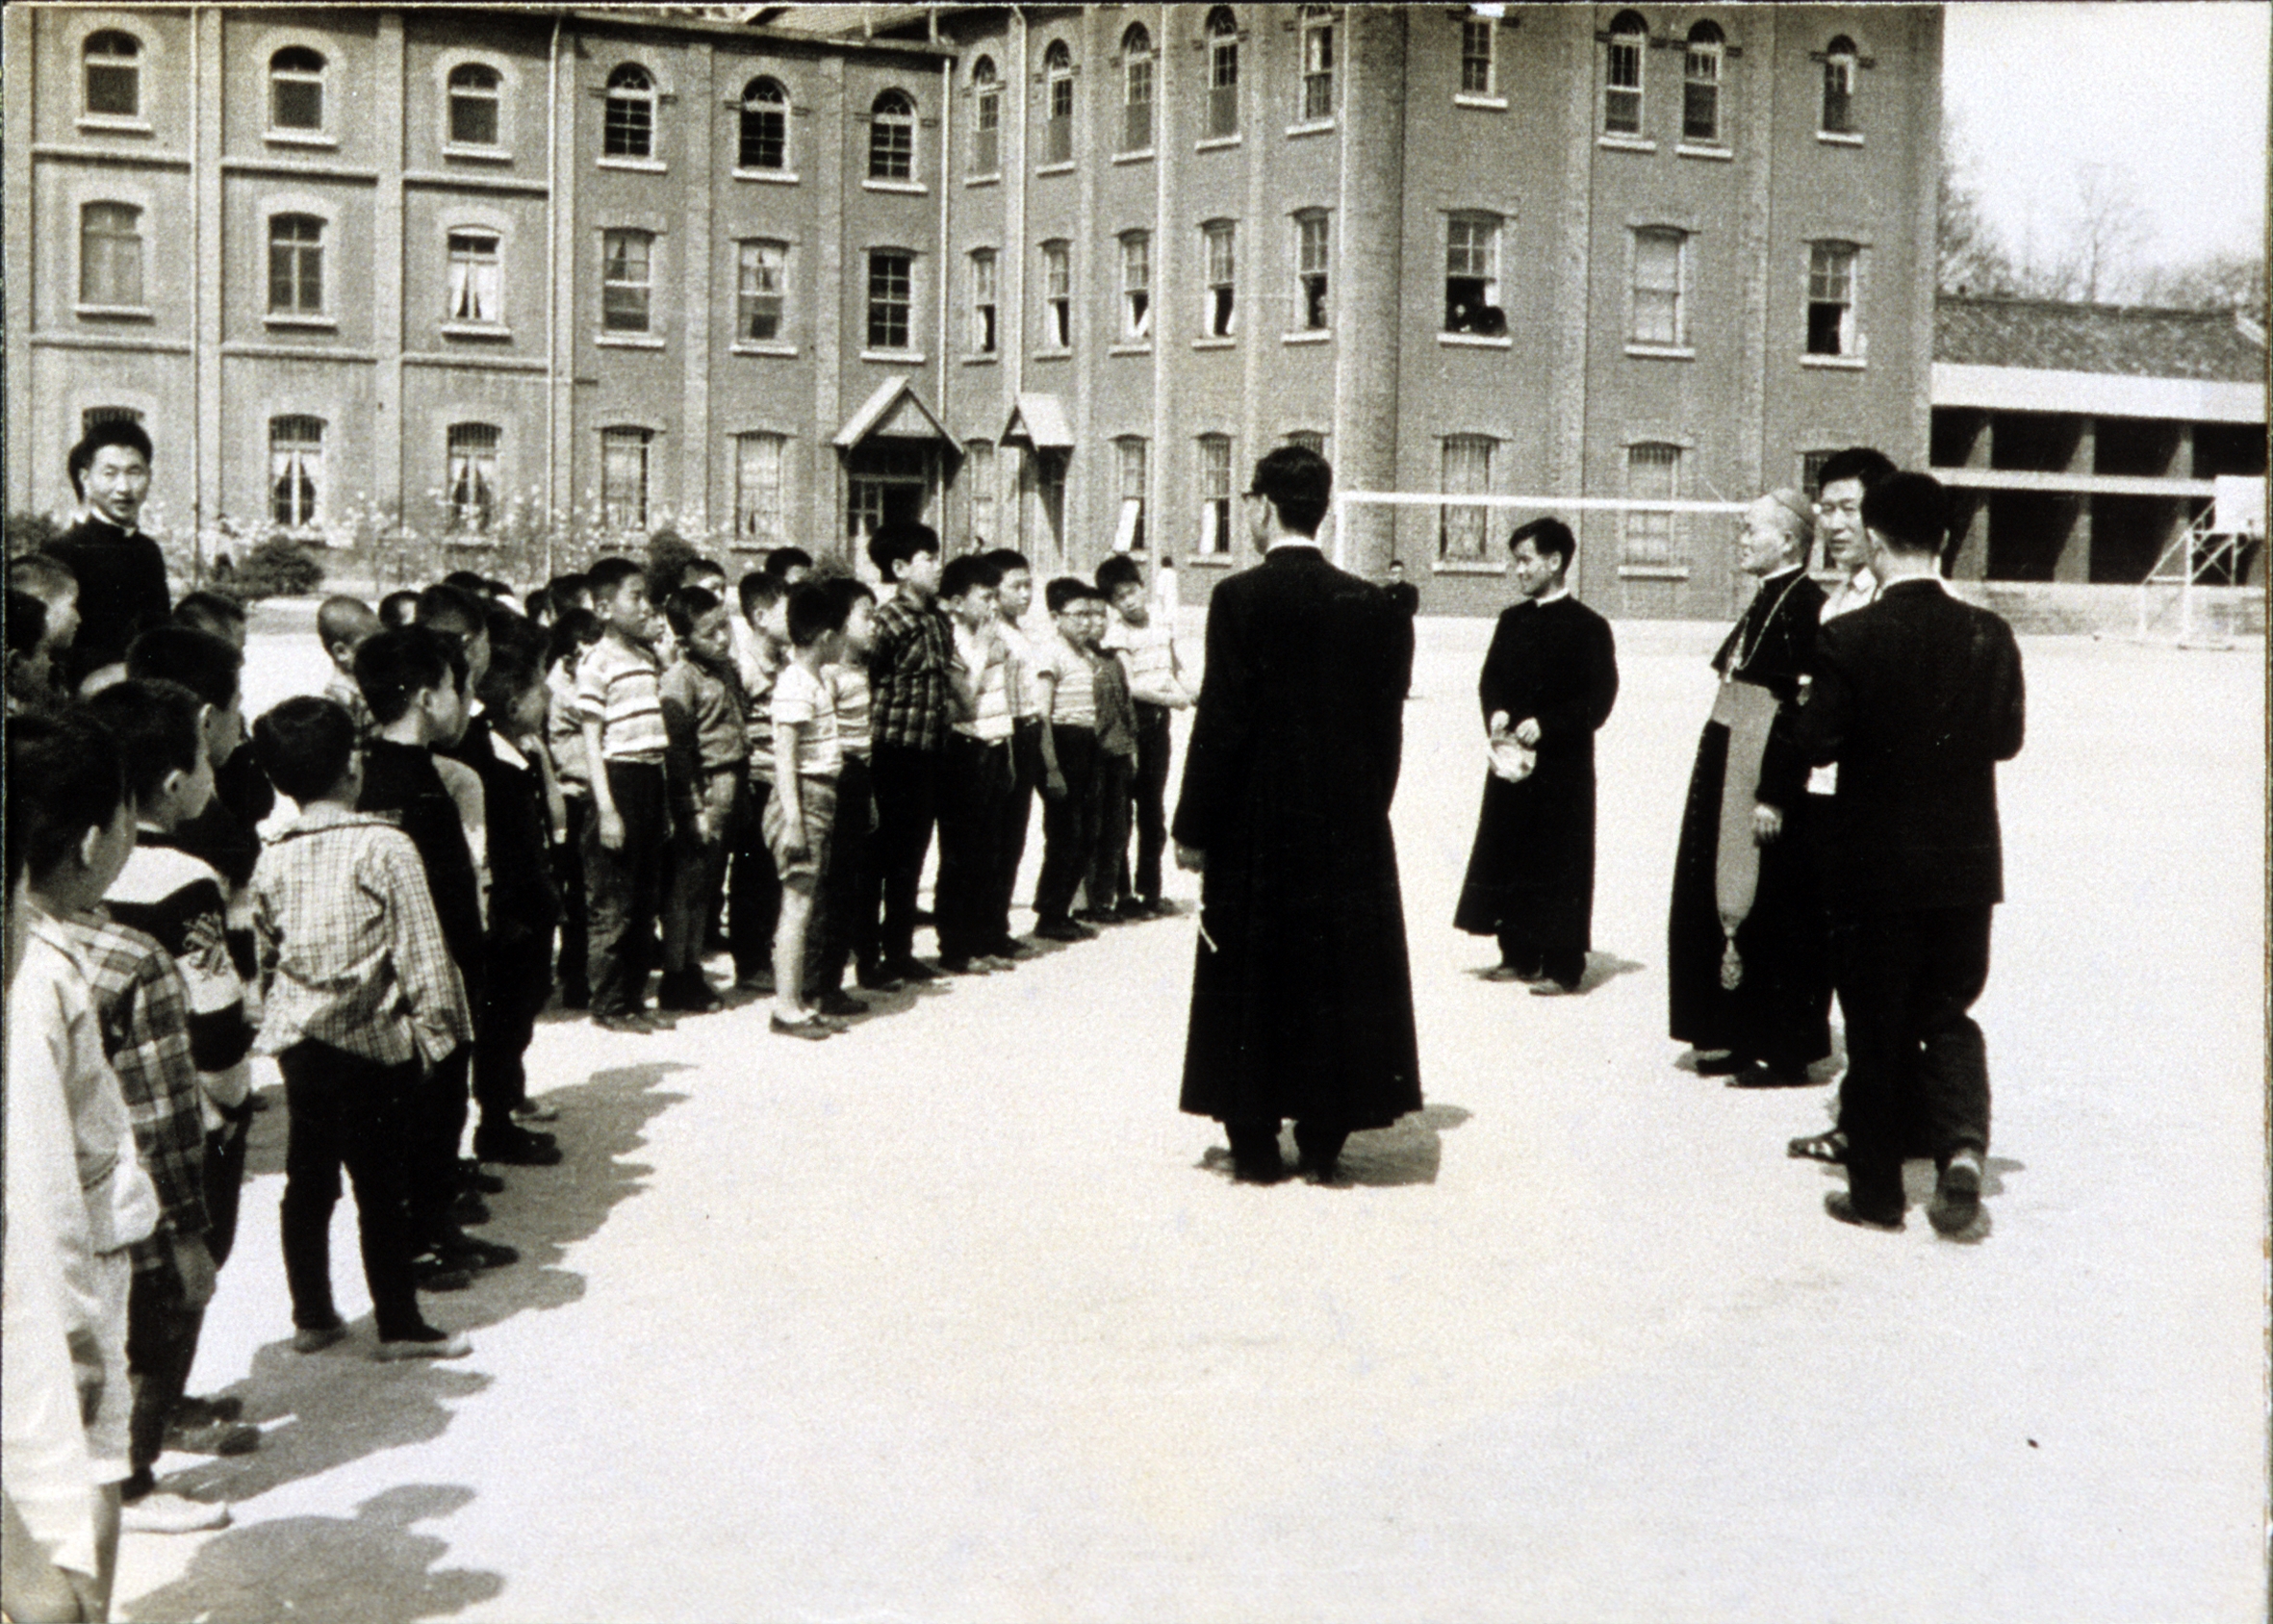 가톨릭대학(1959~1992) (2)의 관련된 이미지 입니다.